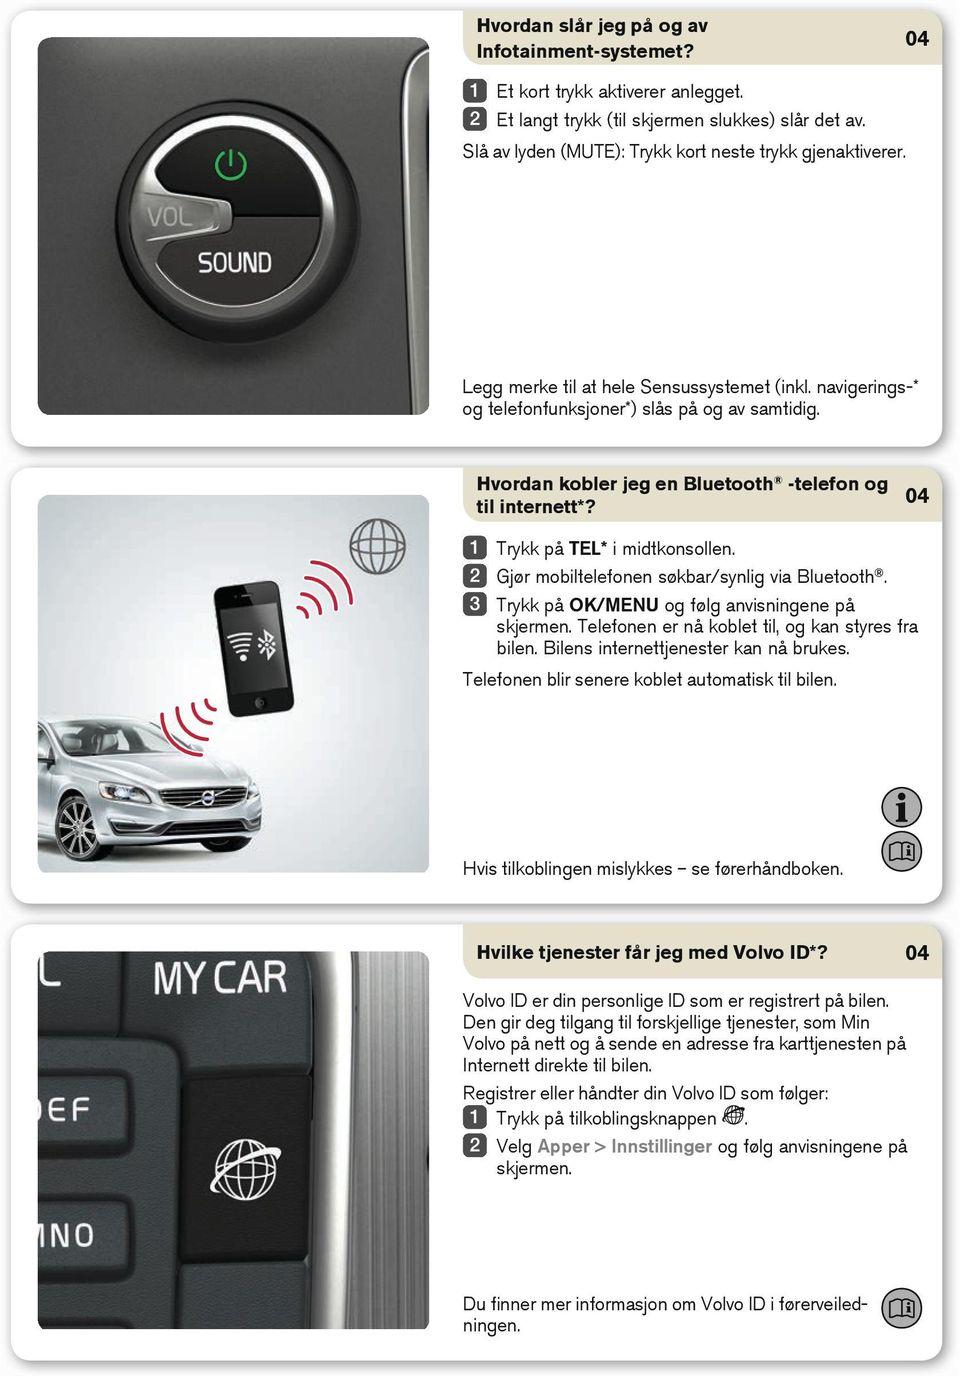 Gjør mobiltelefonen søkbar/synlig via Bluetooth. Trykk på OK/MENU og følg anvisningene på skjermen. Telefonen er nå koblet til, og kan styres fra bilen. Bilens internettjenester kan nå brukes.